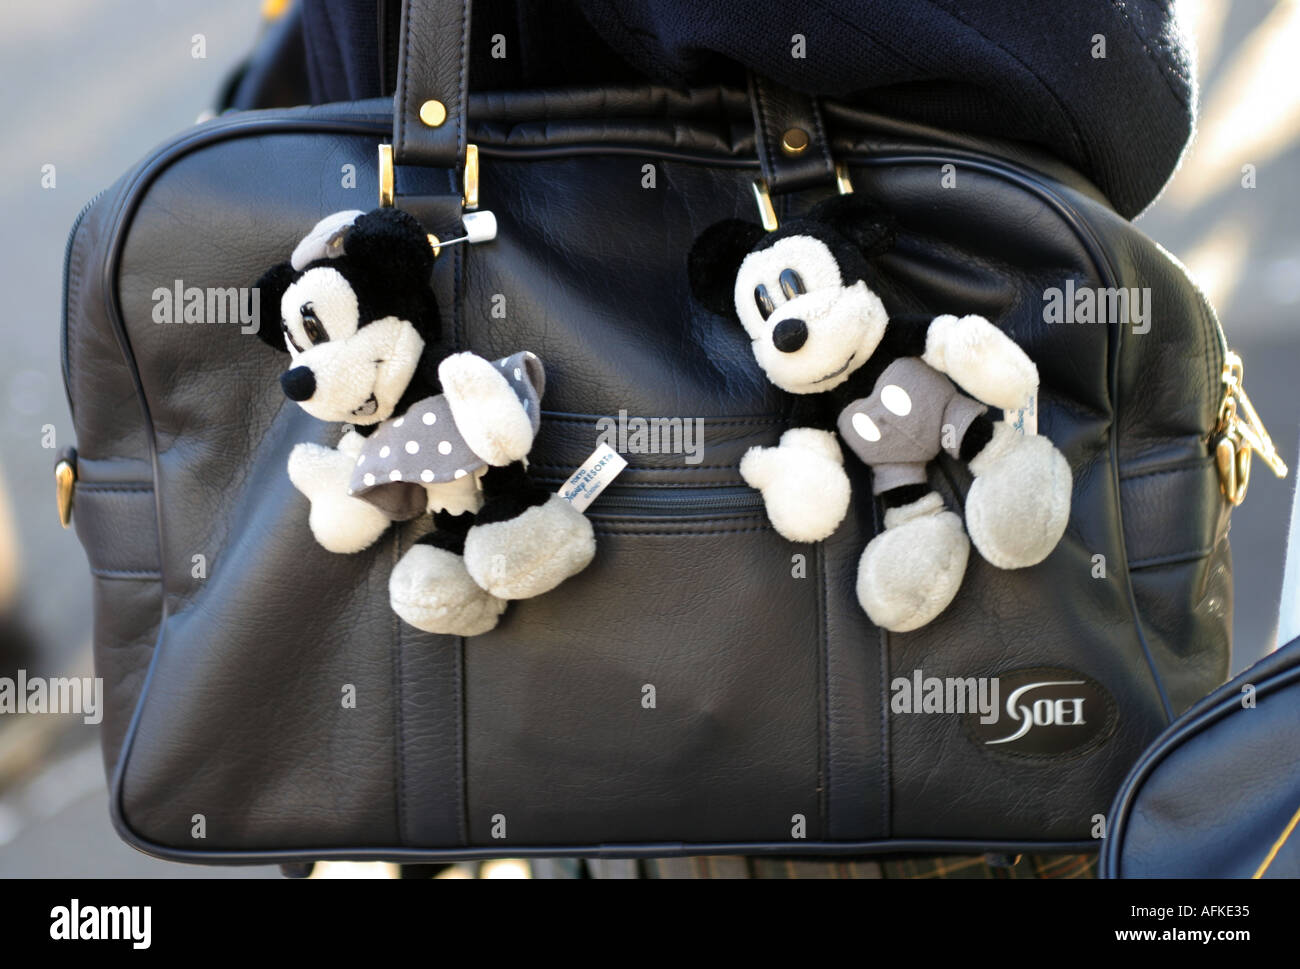 Schulmädchen-Schulranzen mit Mickey und Minnie Maus Stadtteil Shibuya Tokio  Japan Stockfotografie - Alamy